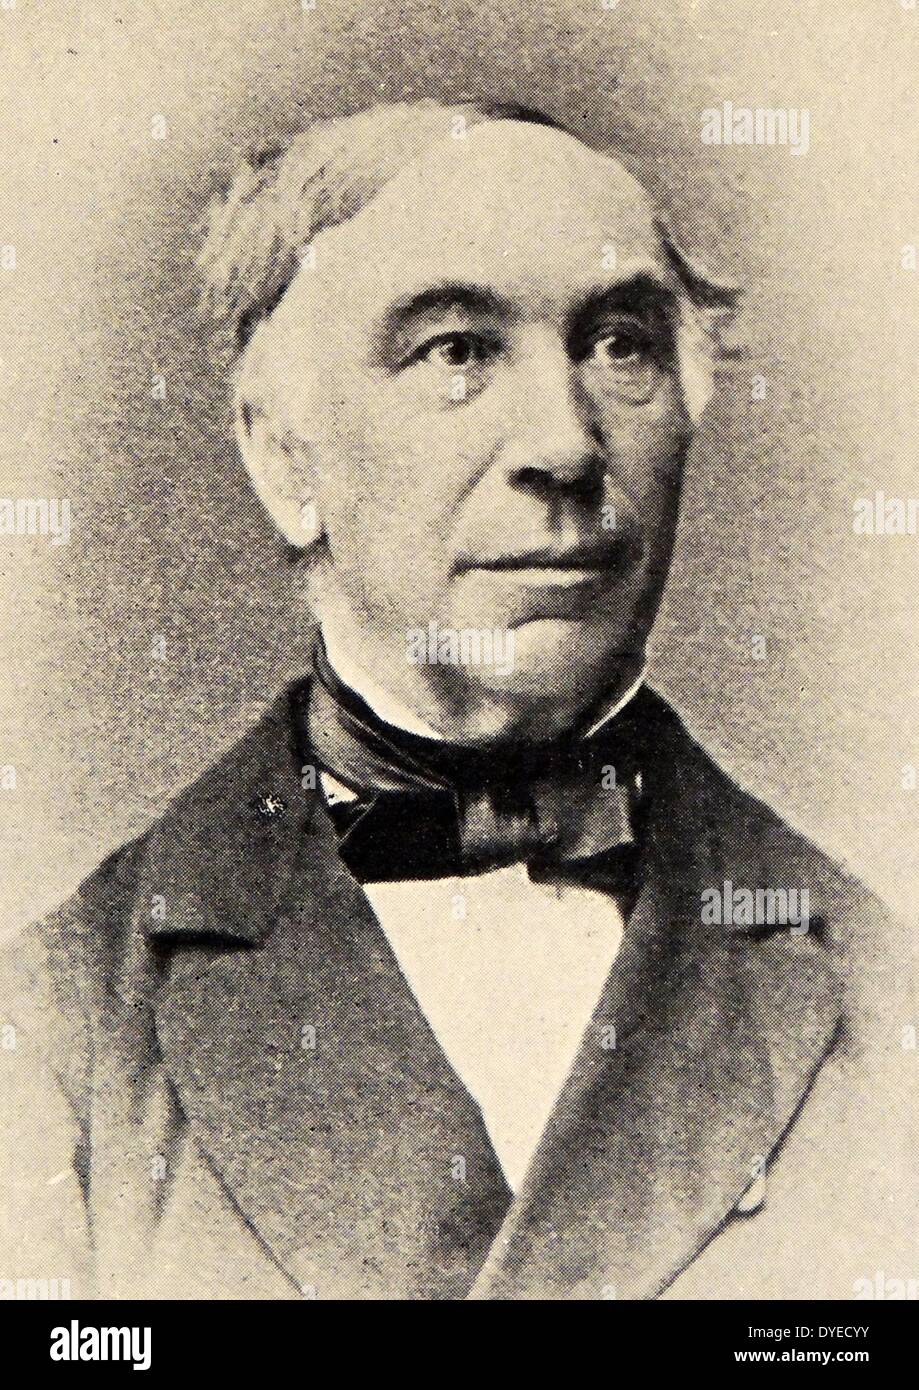 Illustration de Jørgen Moe, un folkloriste norvégien, évêque et auteur. Datée 1875 Banque D'Images